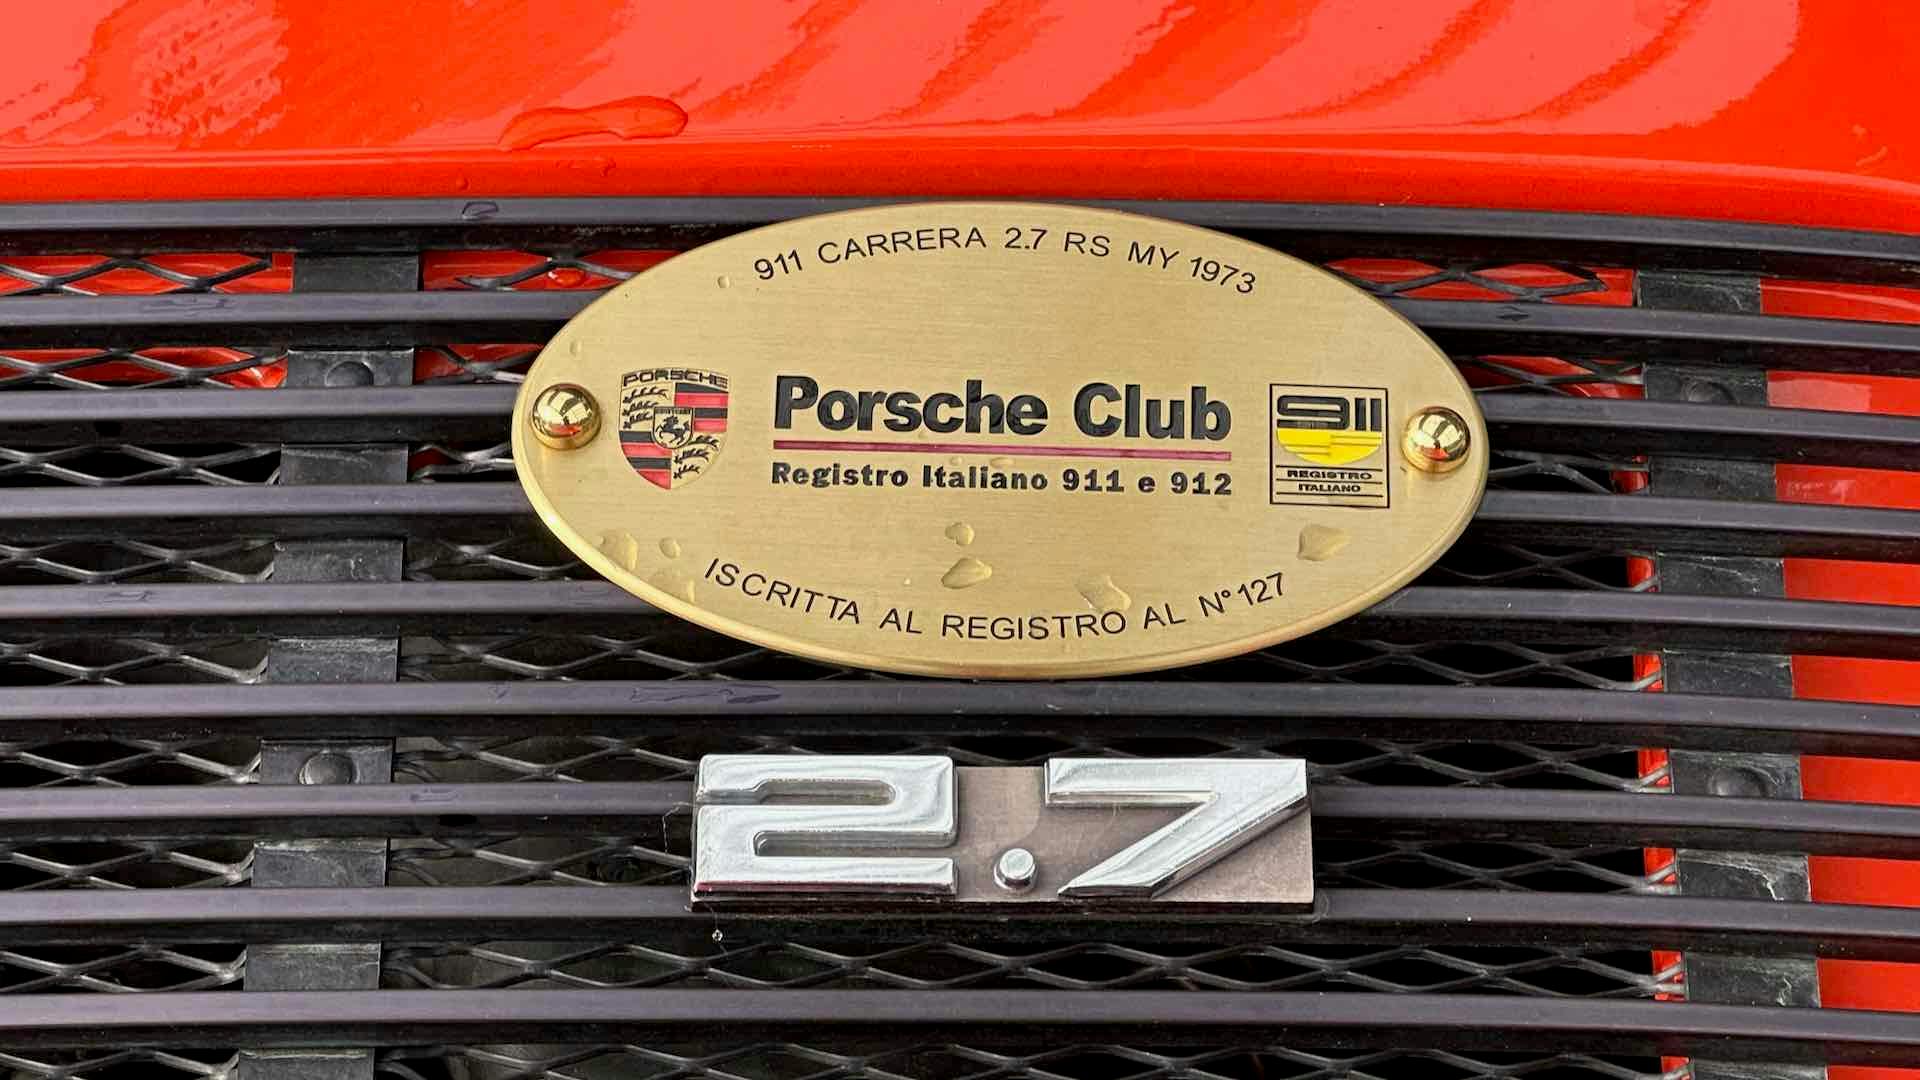 Porsche Festival 2022, Porsche Club, 911 Carrera 2.7 RS